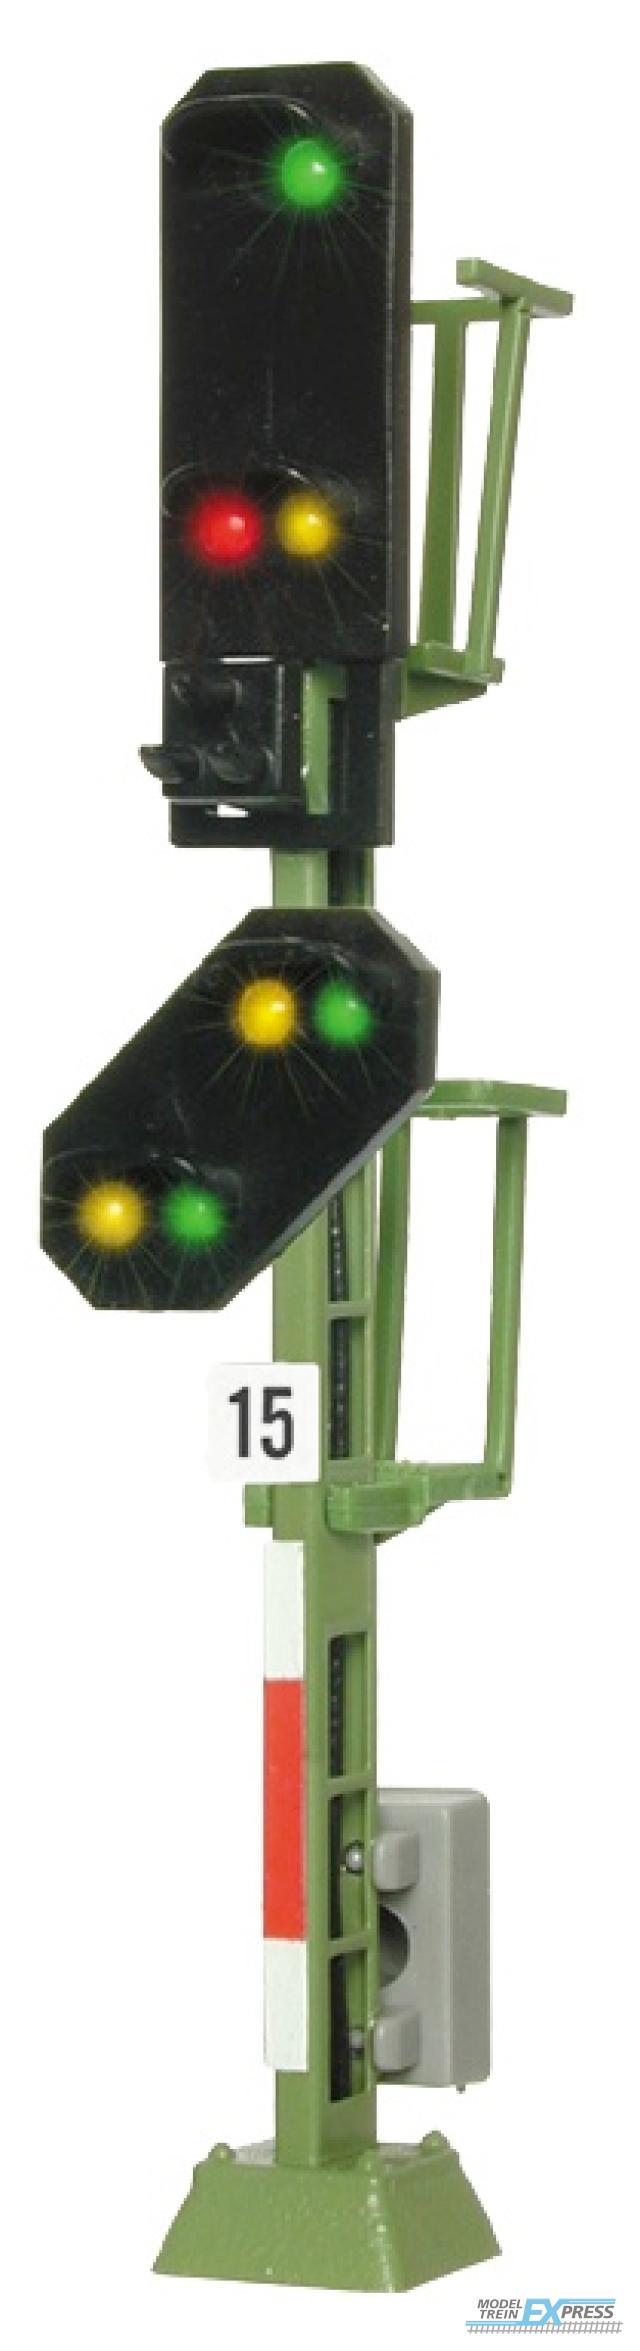 Viessmann 4915 TT Licht-Einfahrsignal mit Vorsignal